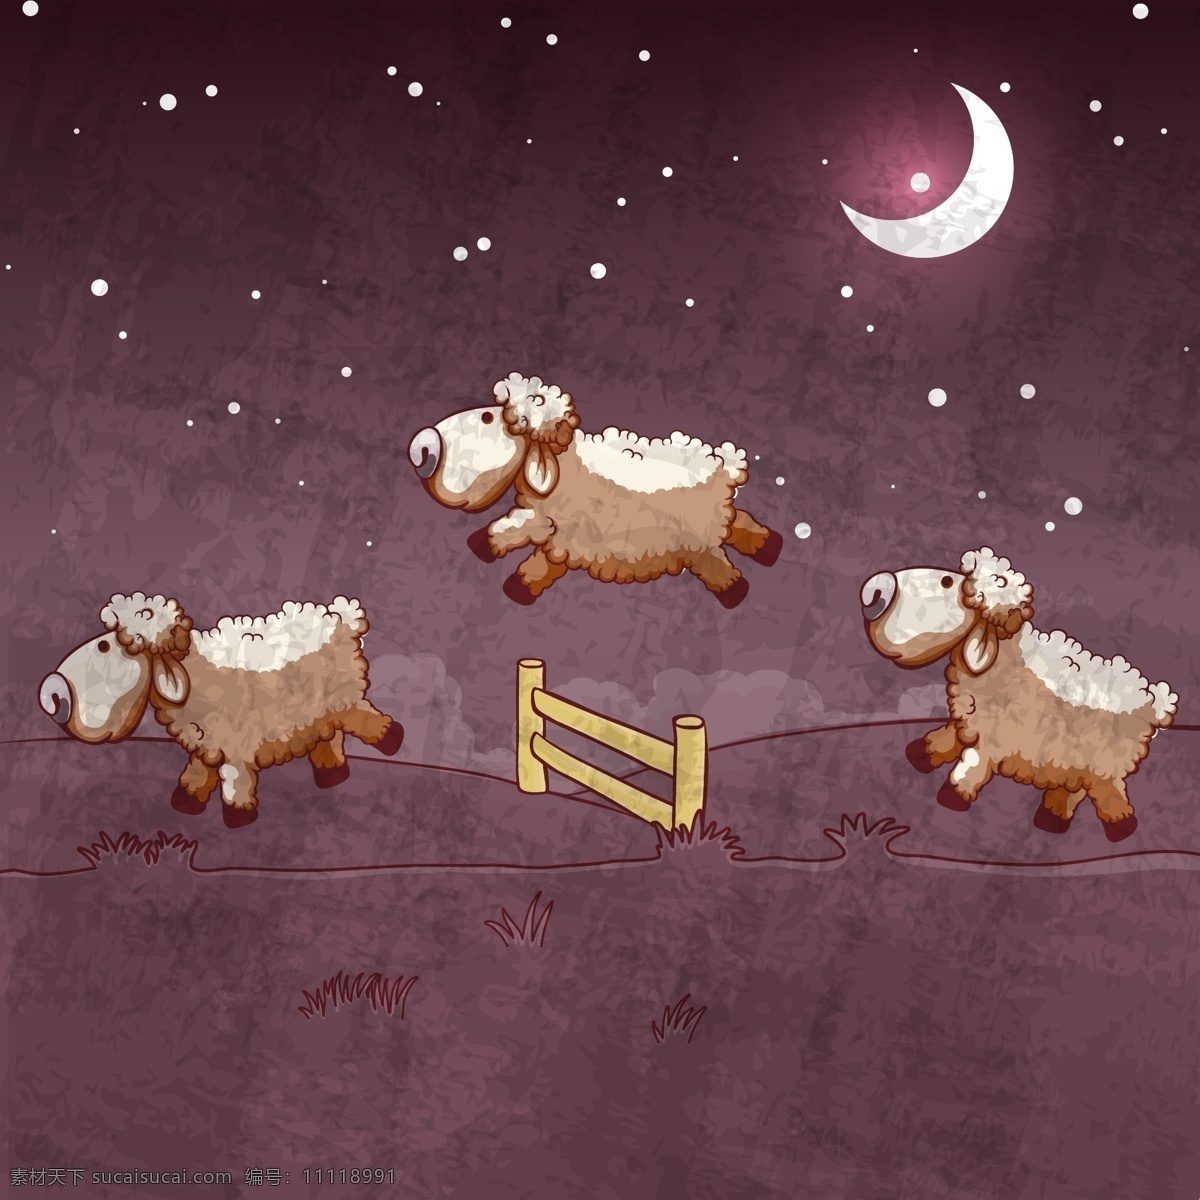 夜晚 小羊 插画 元素 羊 卡通 矢量素材 设计素材